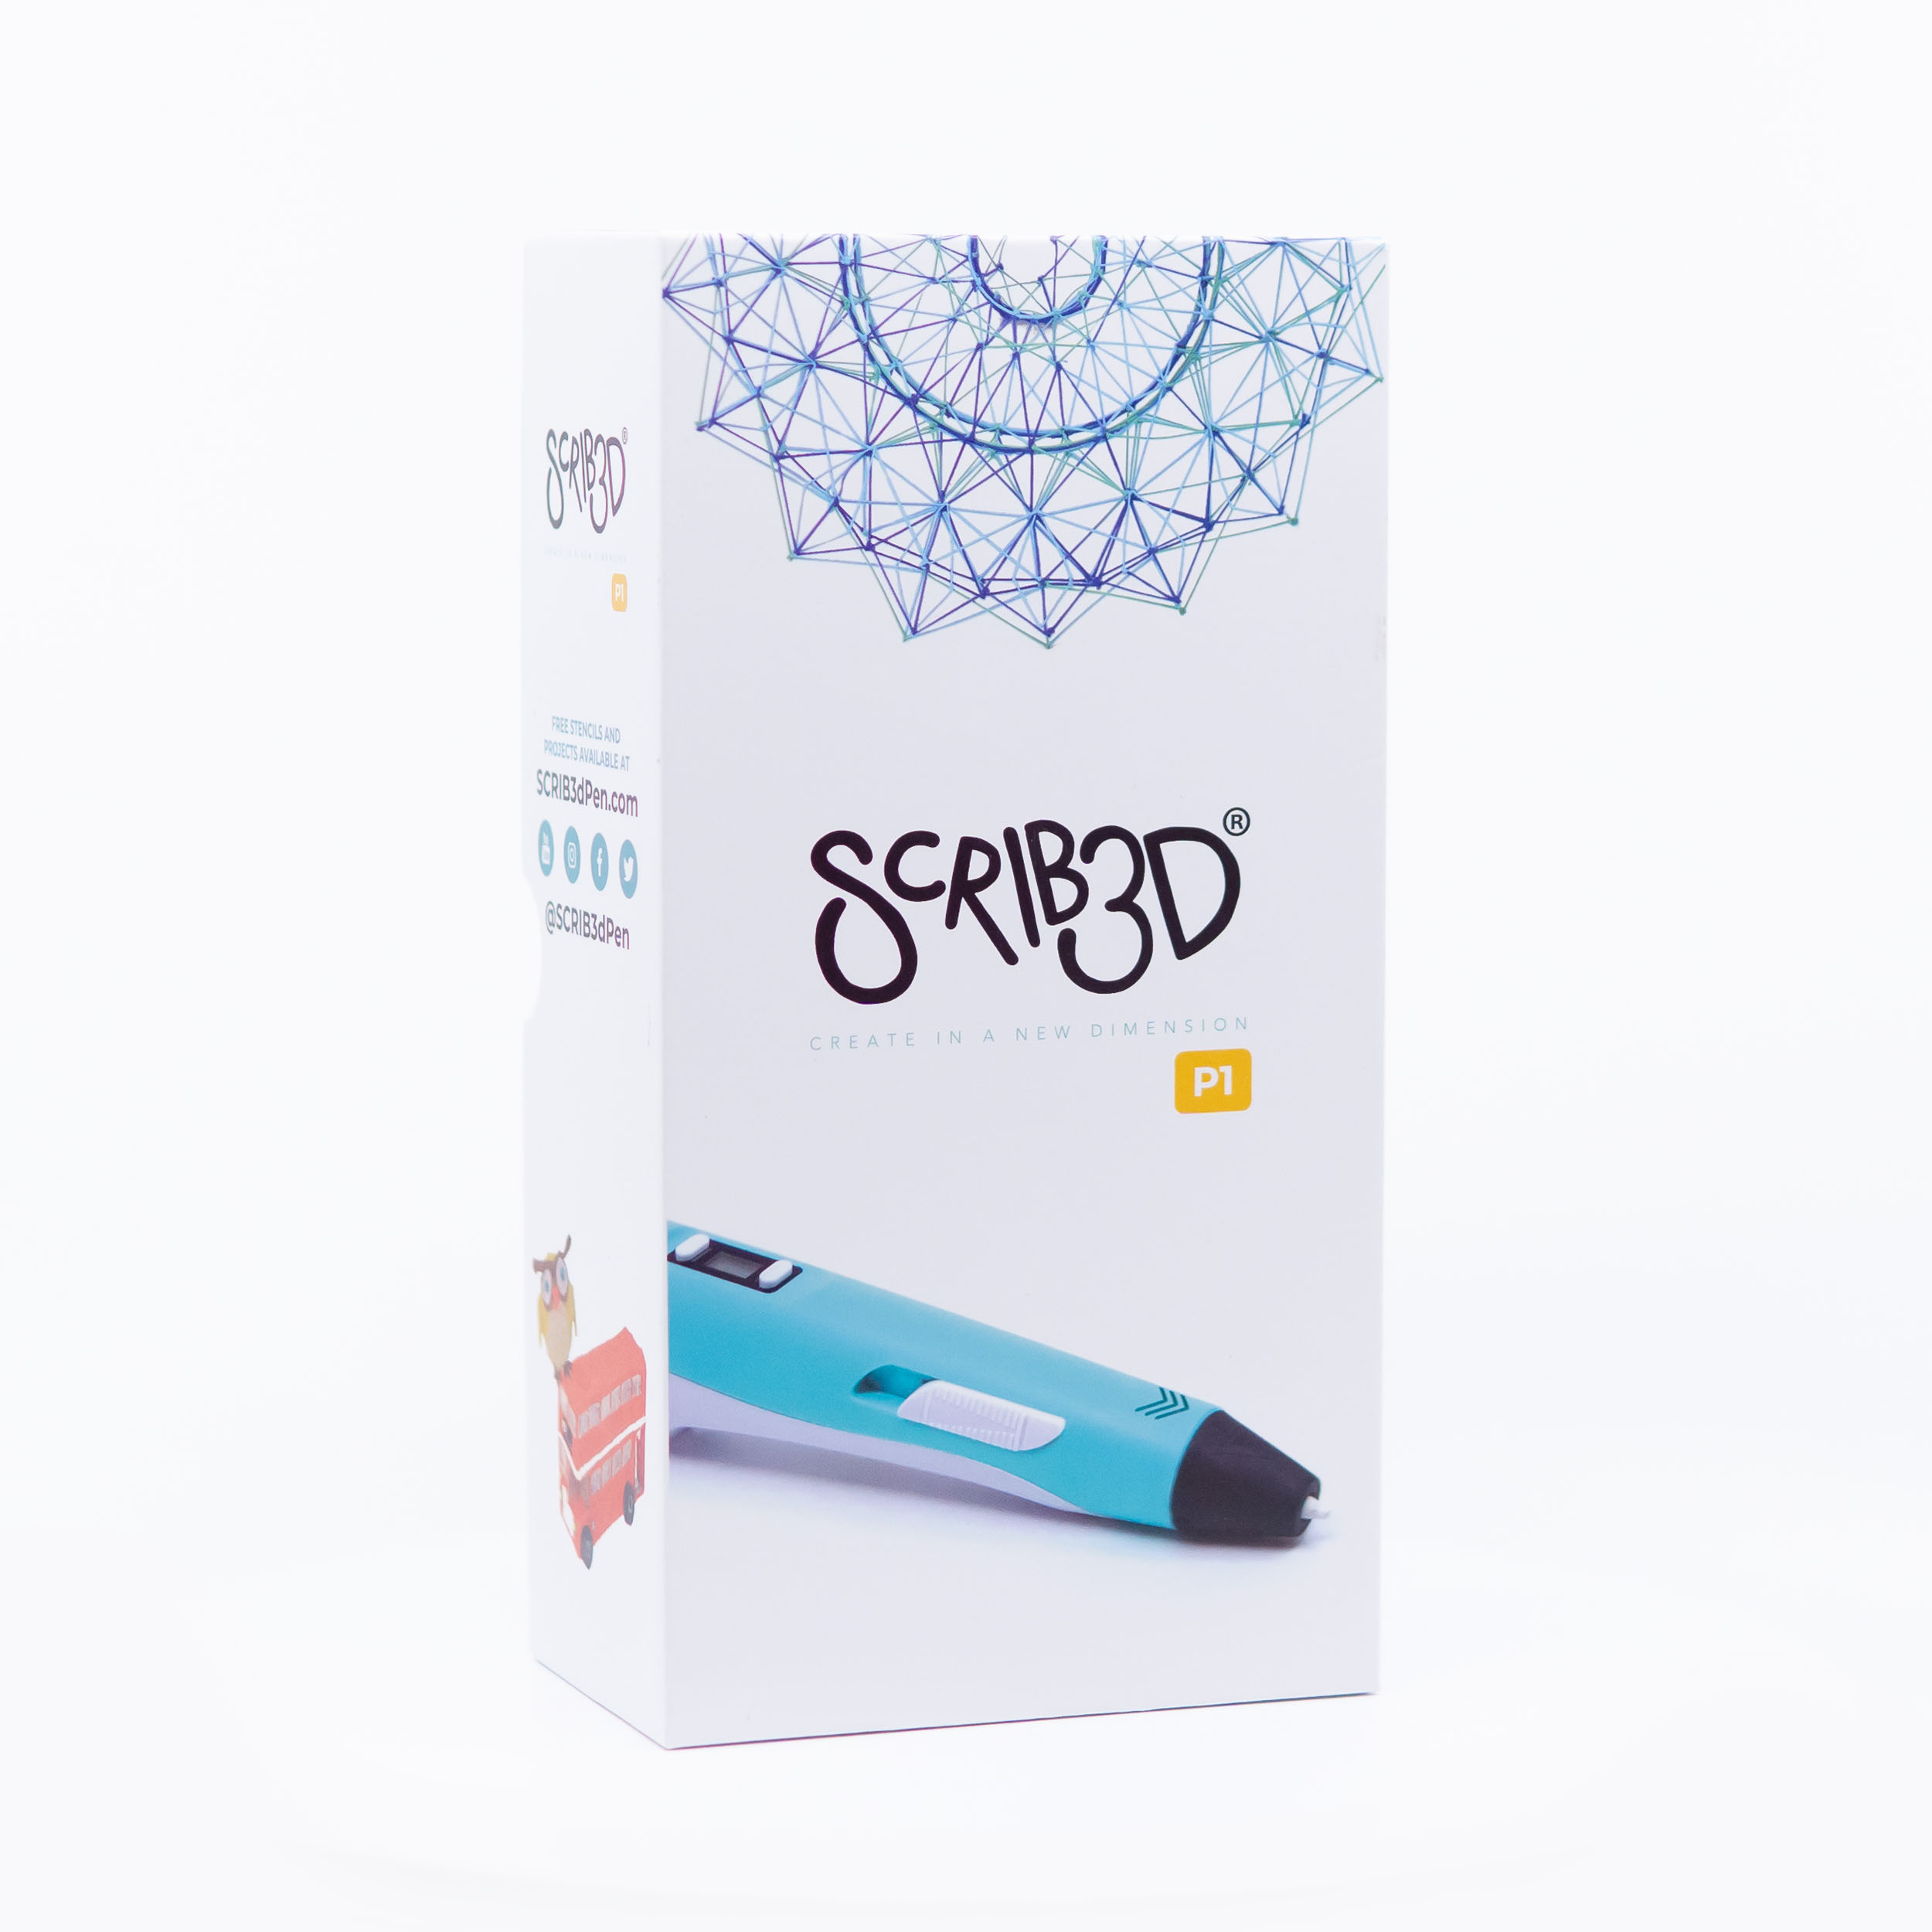 SCRIB3D Stylo d'impression 3D avancé avec écran – Comprend un stylo  d'impression 3D avancé, 3 couleurs de démarrage en plastique PLA, un livre  de